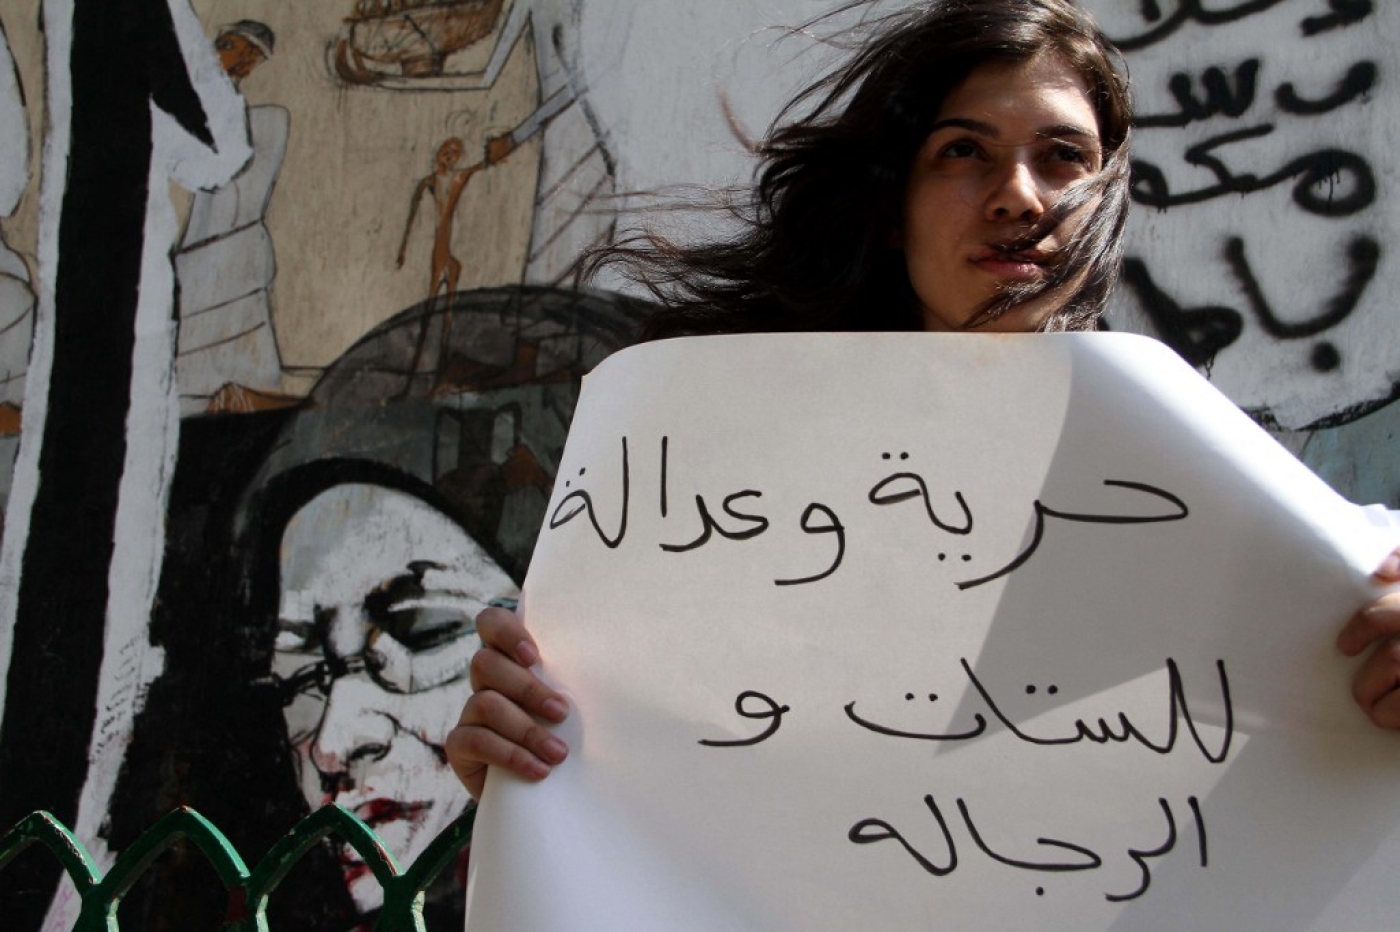 Une manifestante tient une pancarte réclamant « Liberté et justice pour les femmes et les hommes » lors d’une manifestation au Caire contre le harcèlement sexuel en Égypte, le 6 juillet 2012 (AFP/Ahmed Mahmud)